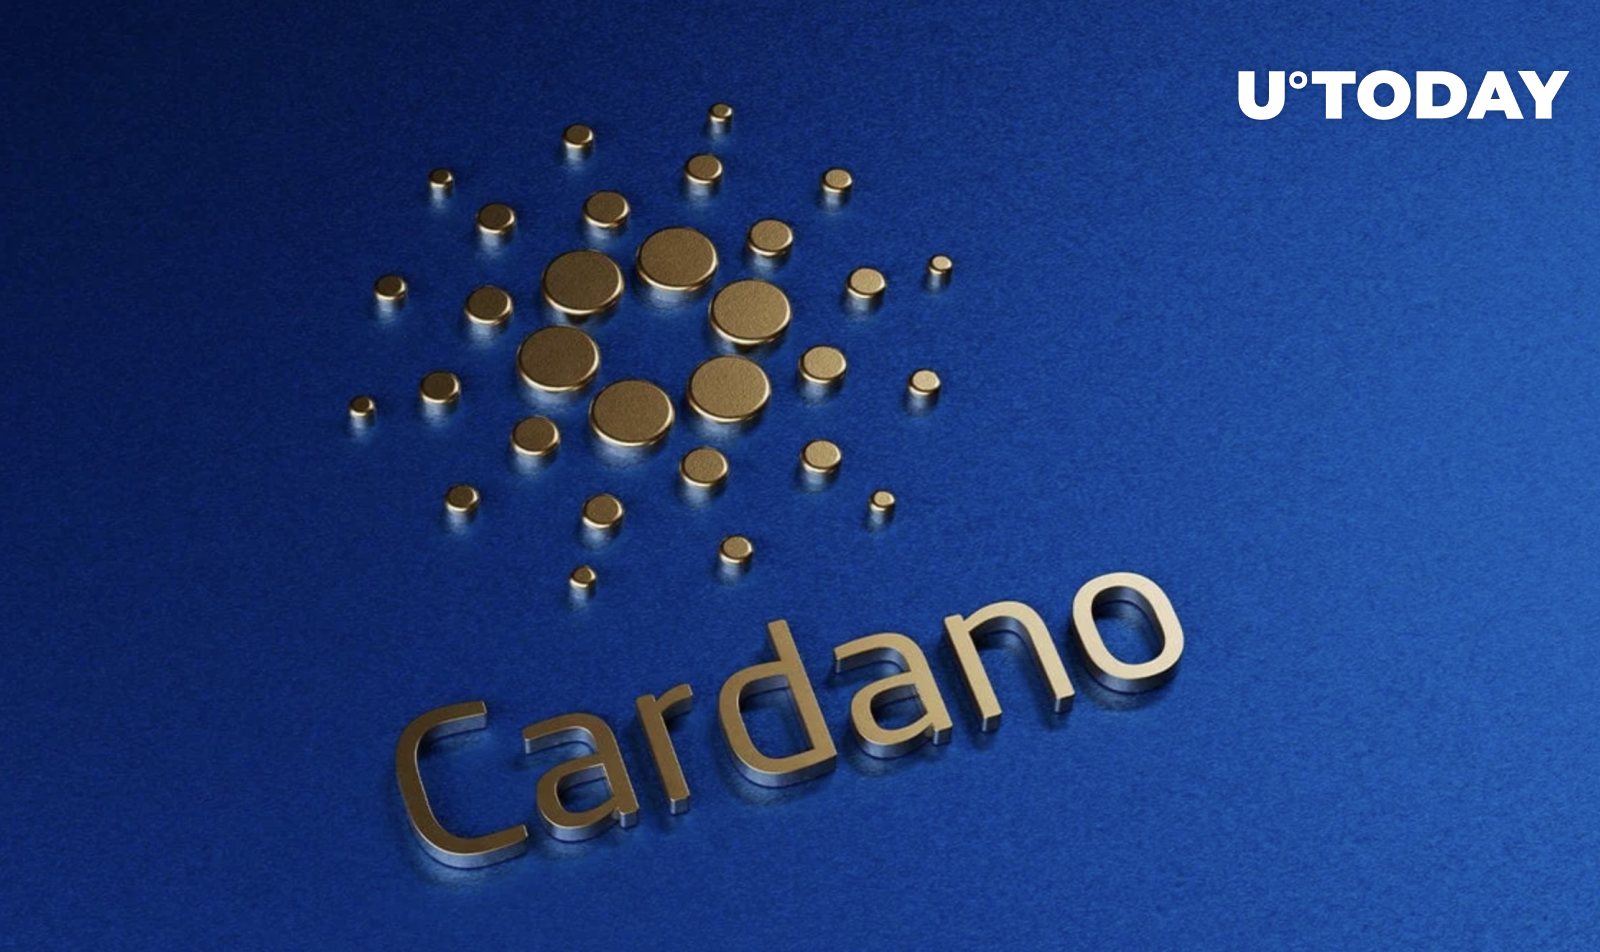 بوم Cardano DeFi منجر به بیش از 2 میلیون تراکنش در کمتر از یک ماه شد.